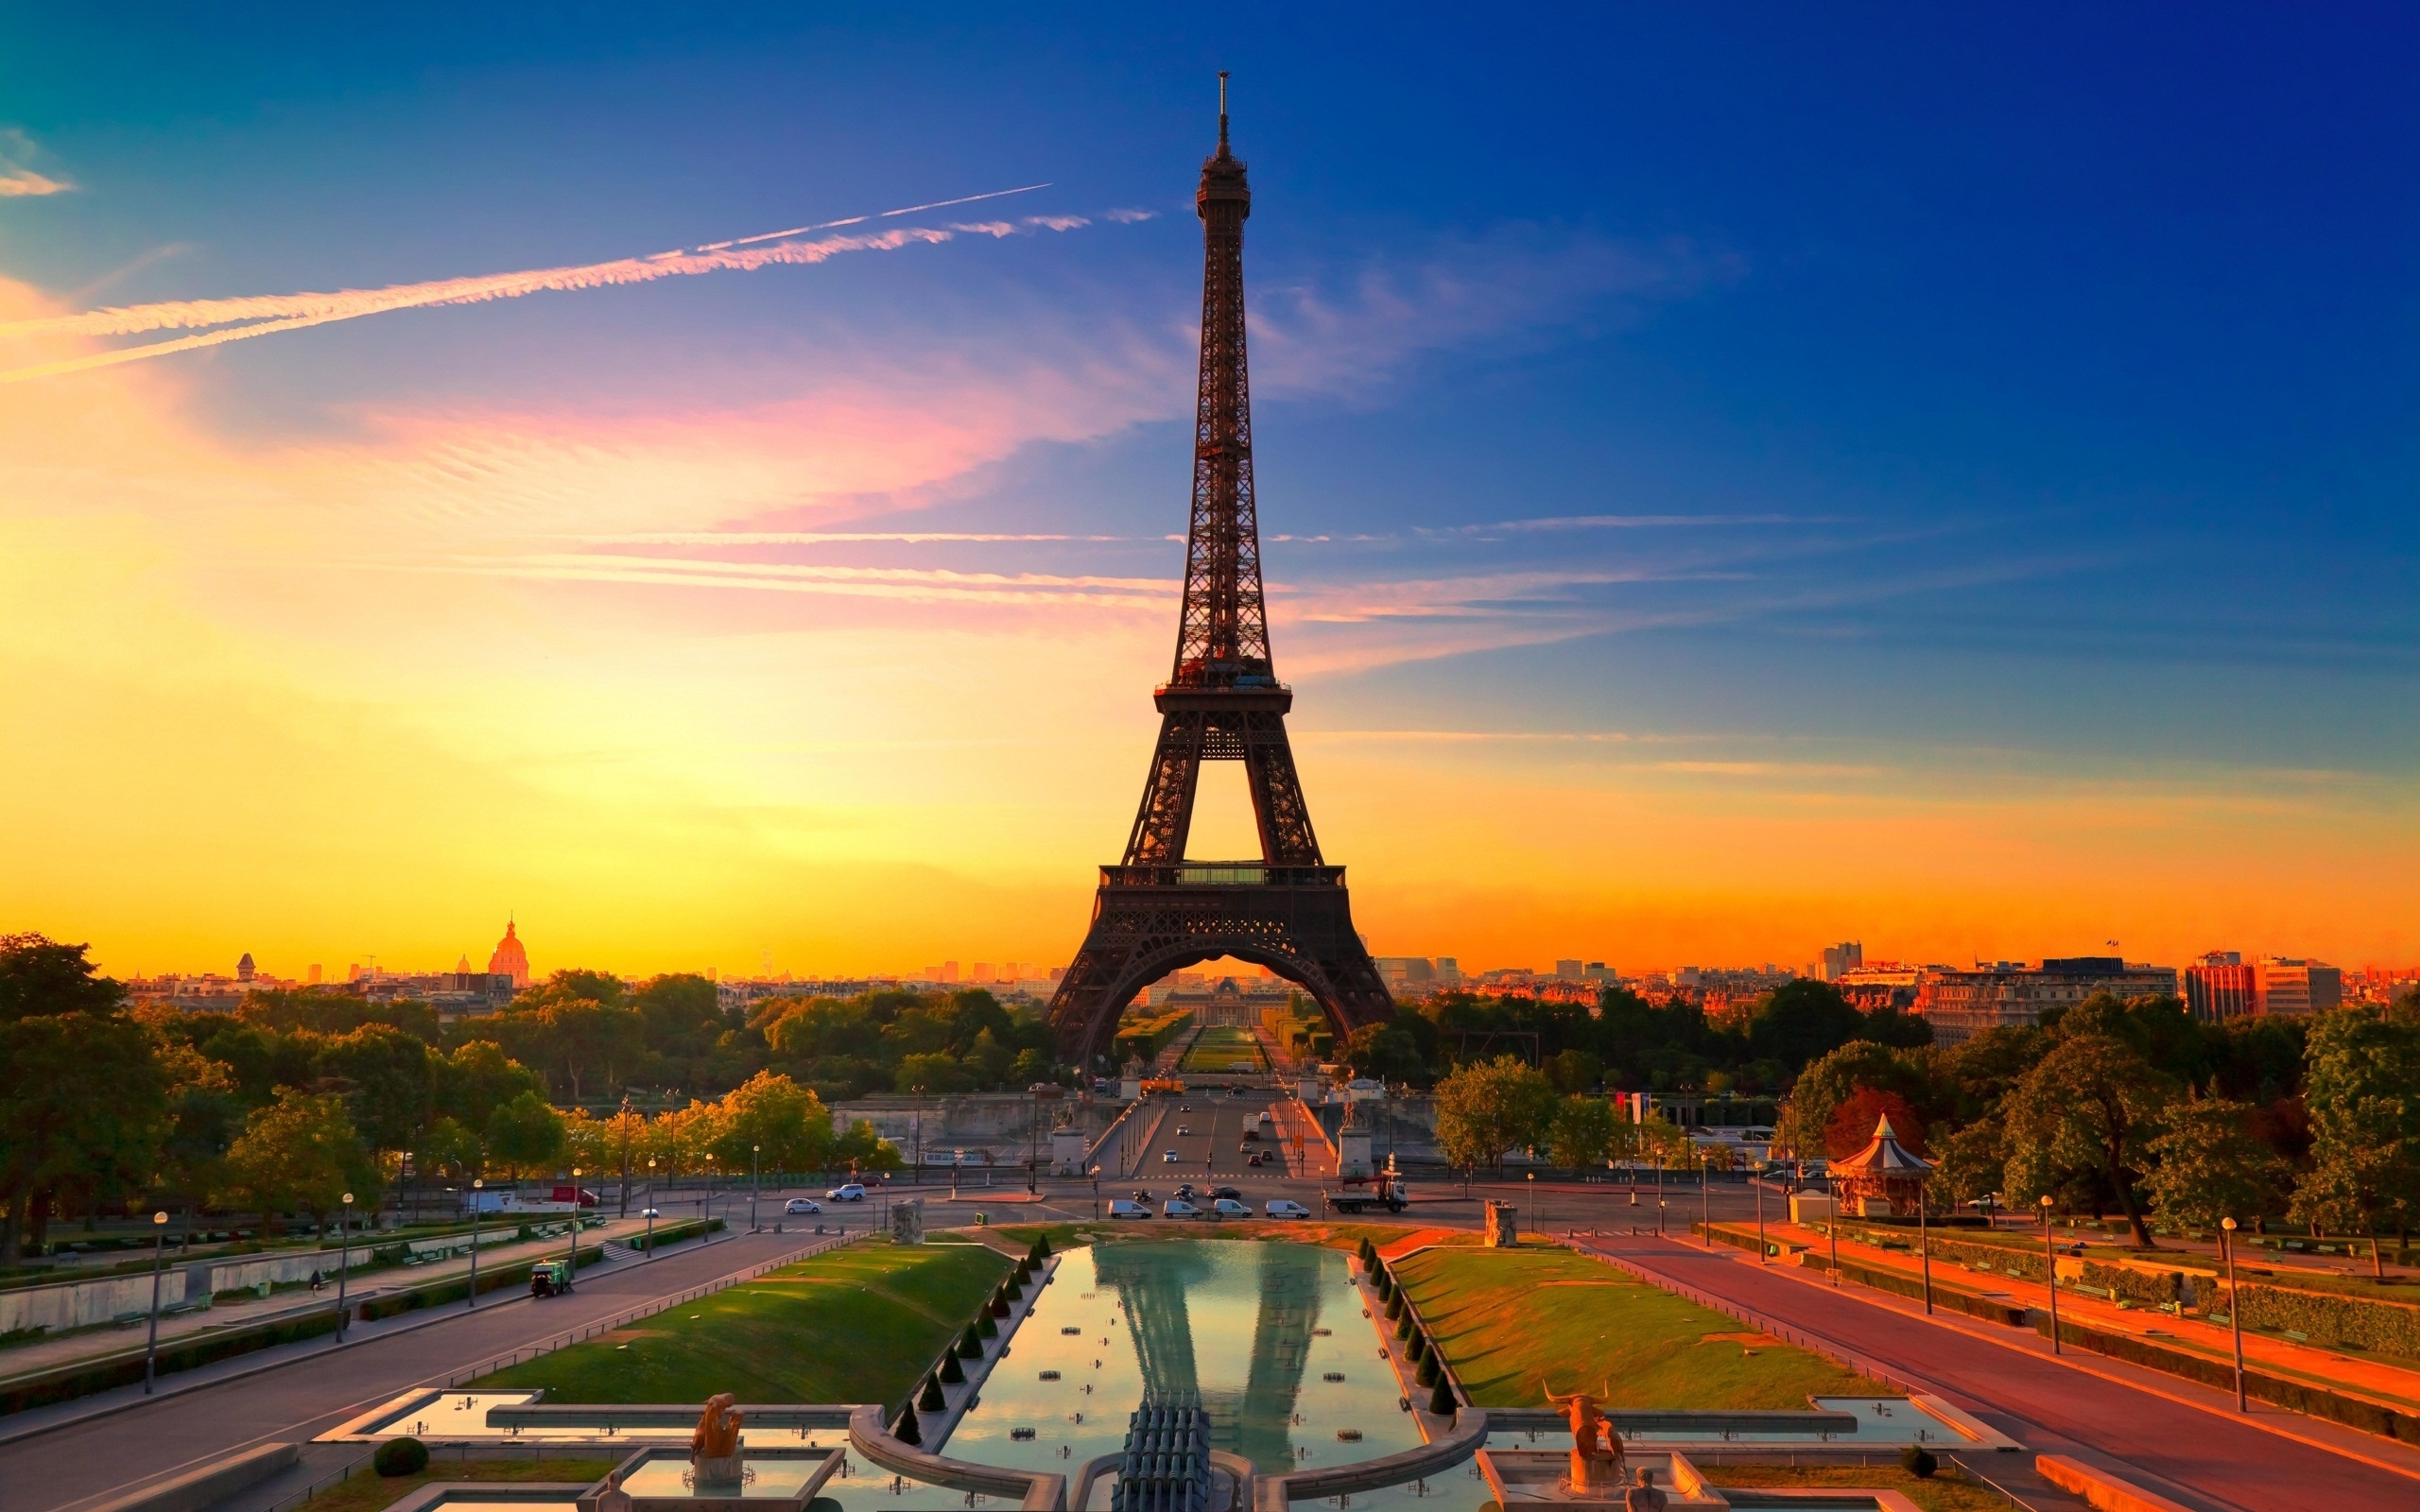 Eiffel Tower Paris France copy